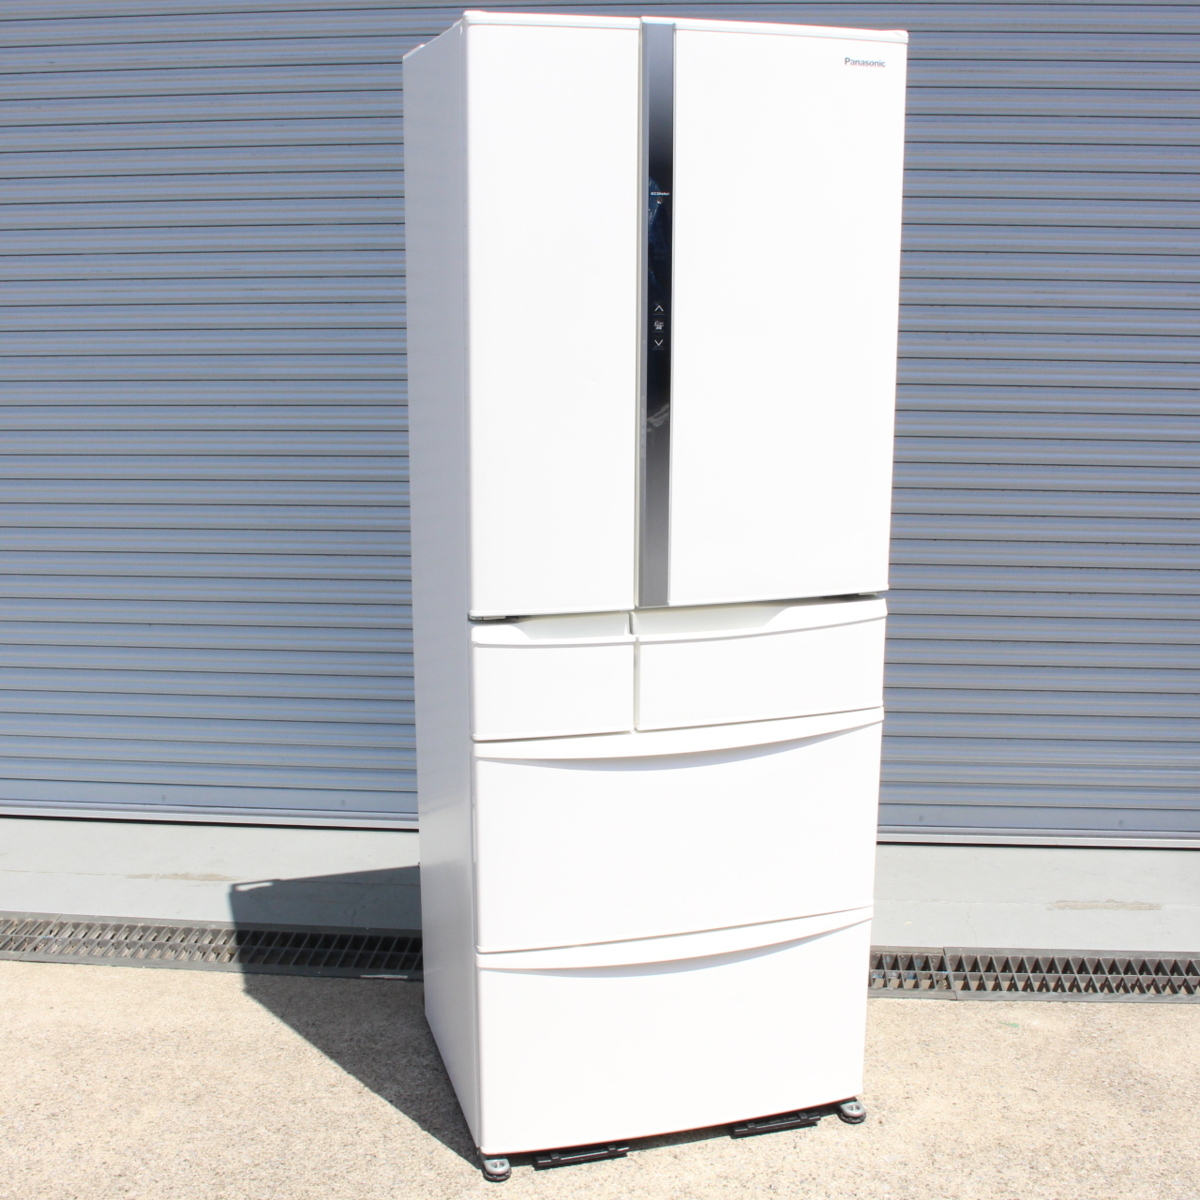 パナソニック ノンフロン冷凍冷蔵庫 NR-FV45S1-W 6ドア フレンチドア